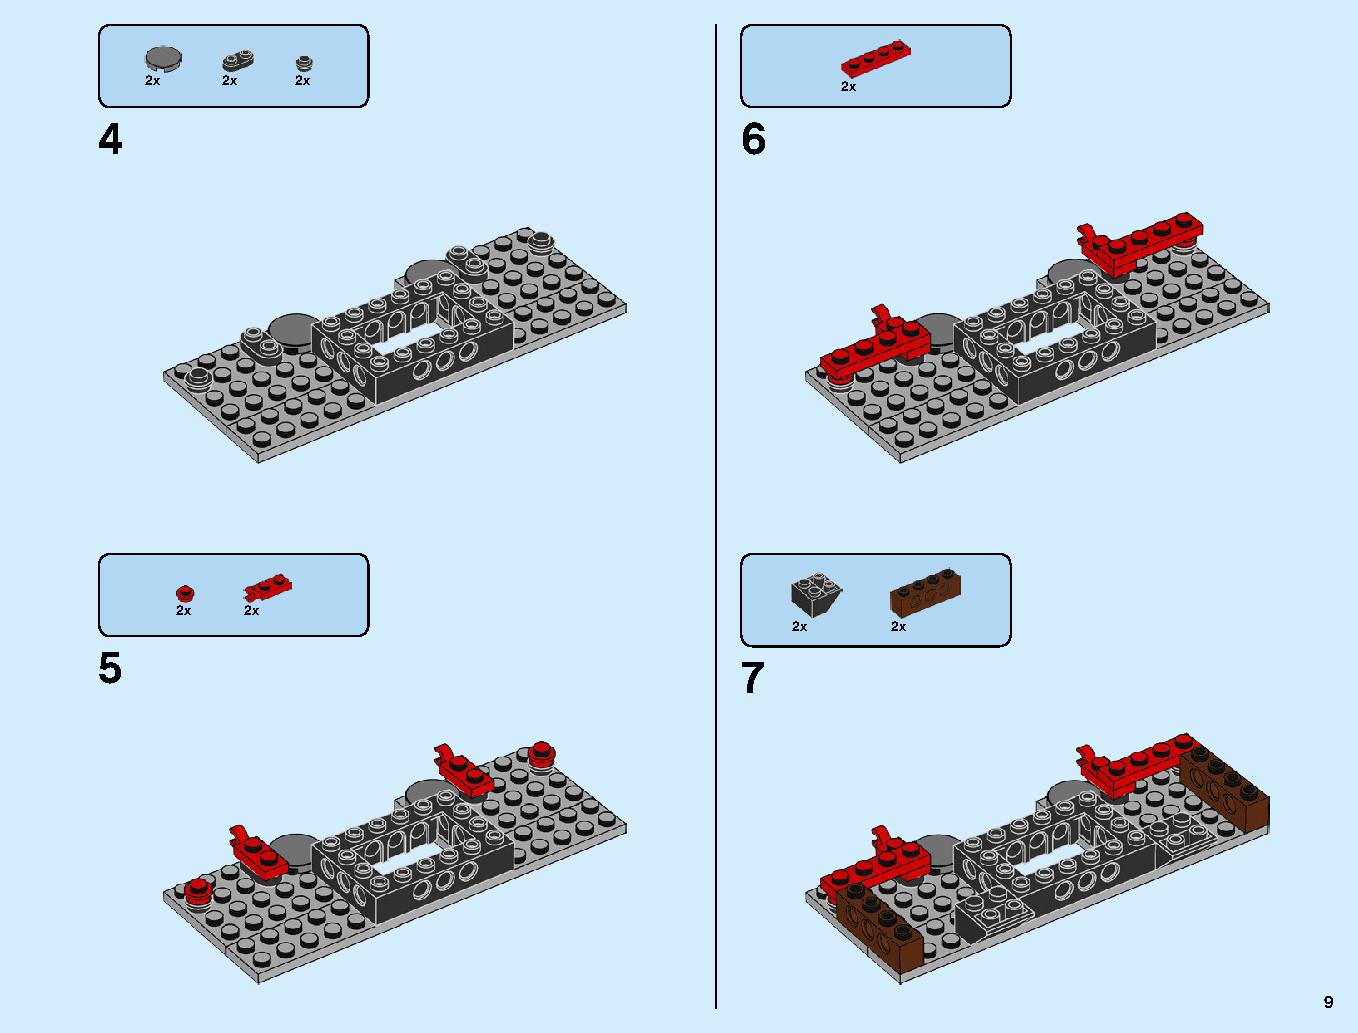 ニンジャ道場 70670 レゴの商品情報 レゴの説明書・組立方法 9 page